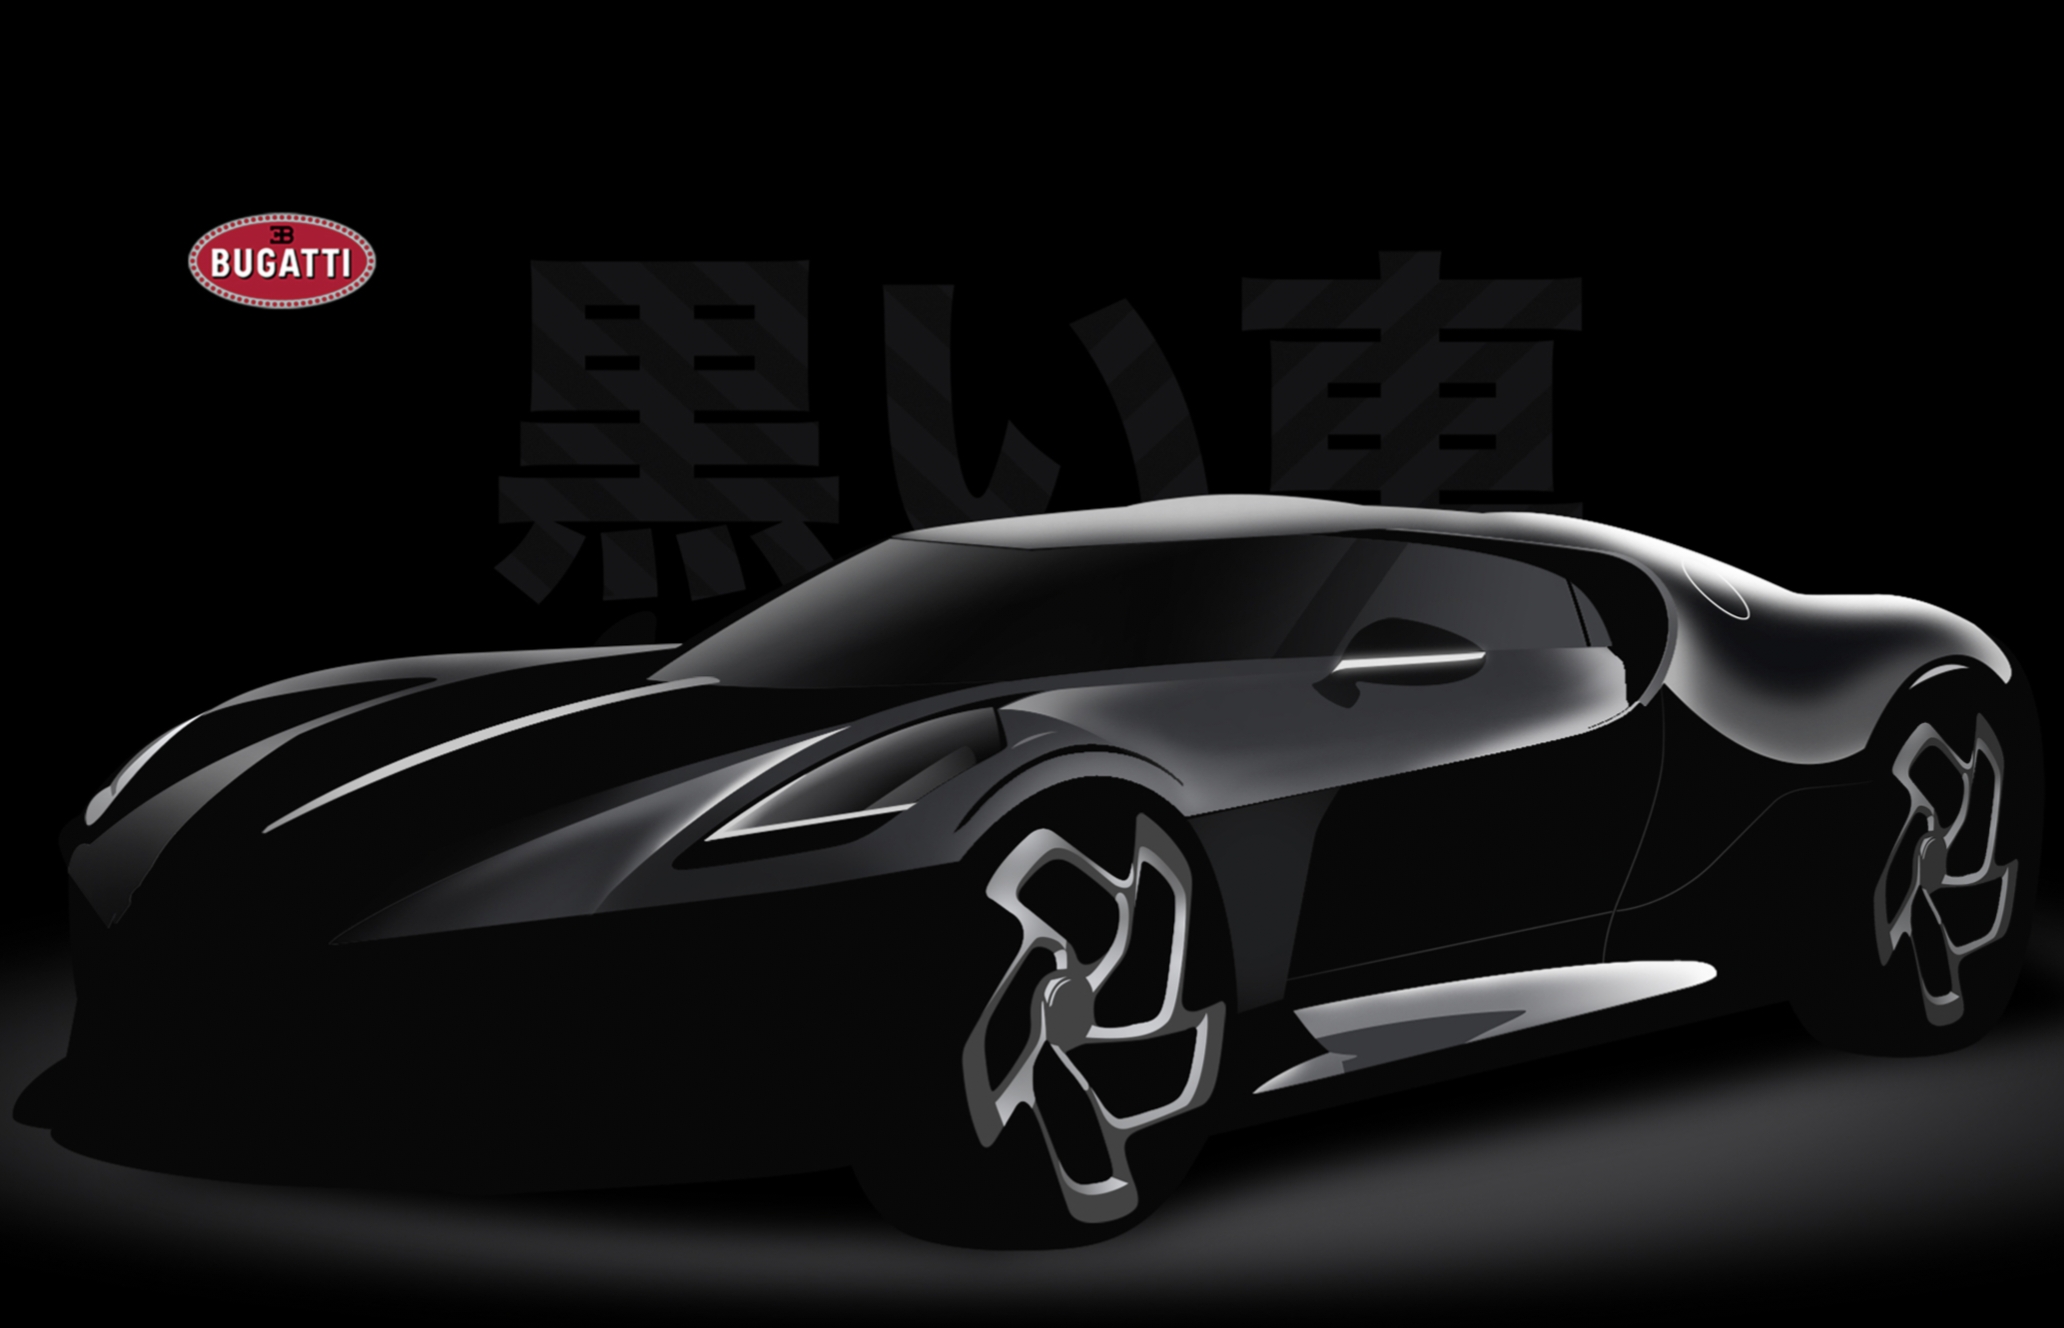 Bugatti La Voiture Noire Hypercar Termahal di Dunia dengan Fitur Teknologi Canggih Mesin Kuat Quad-Turbo W16